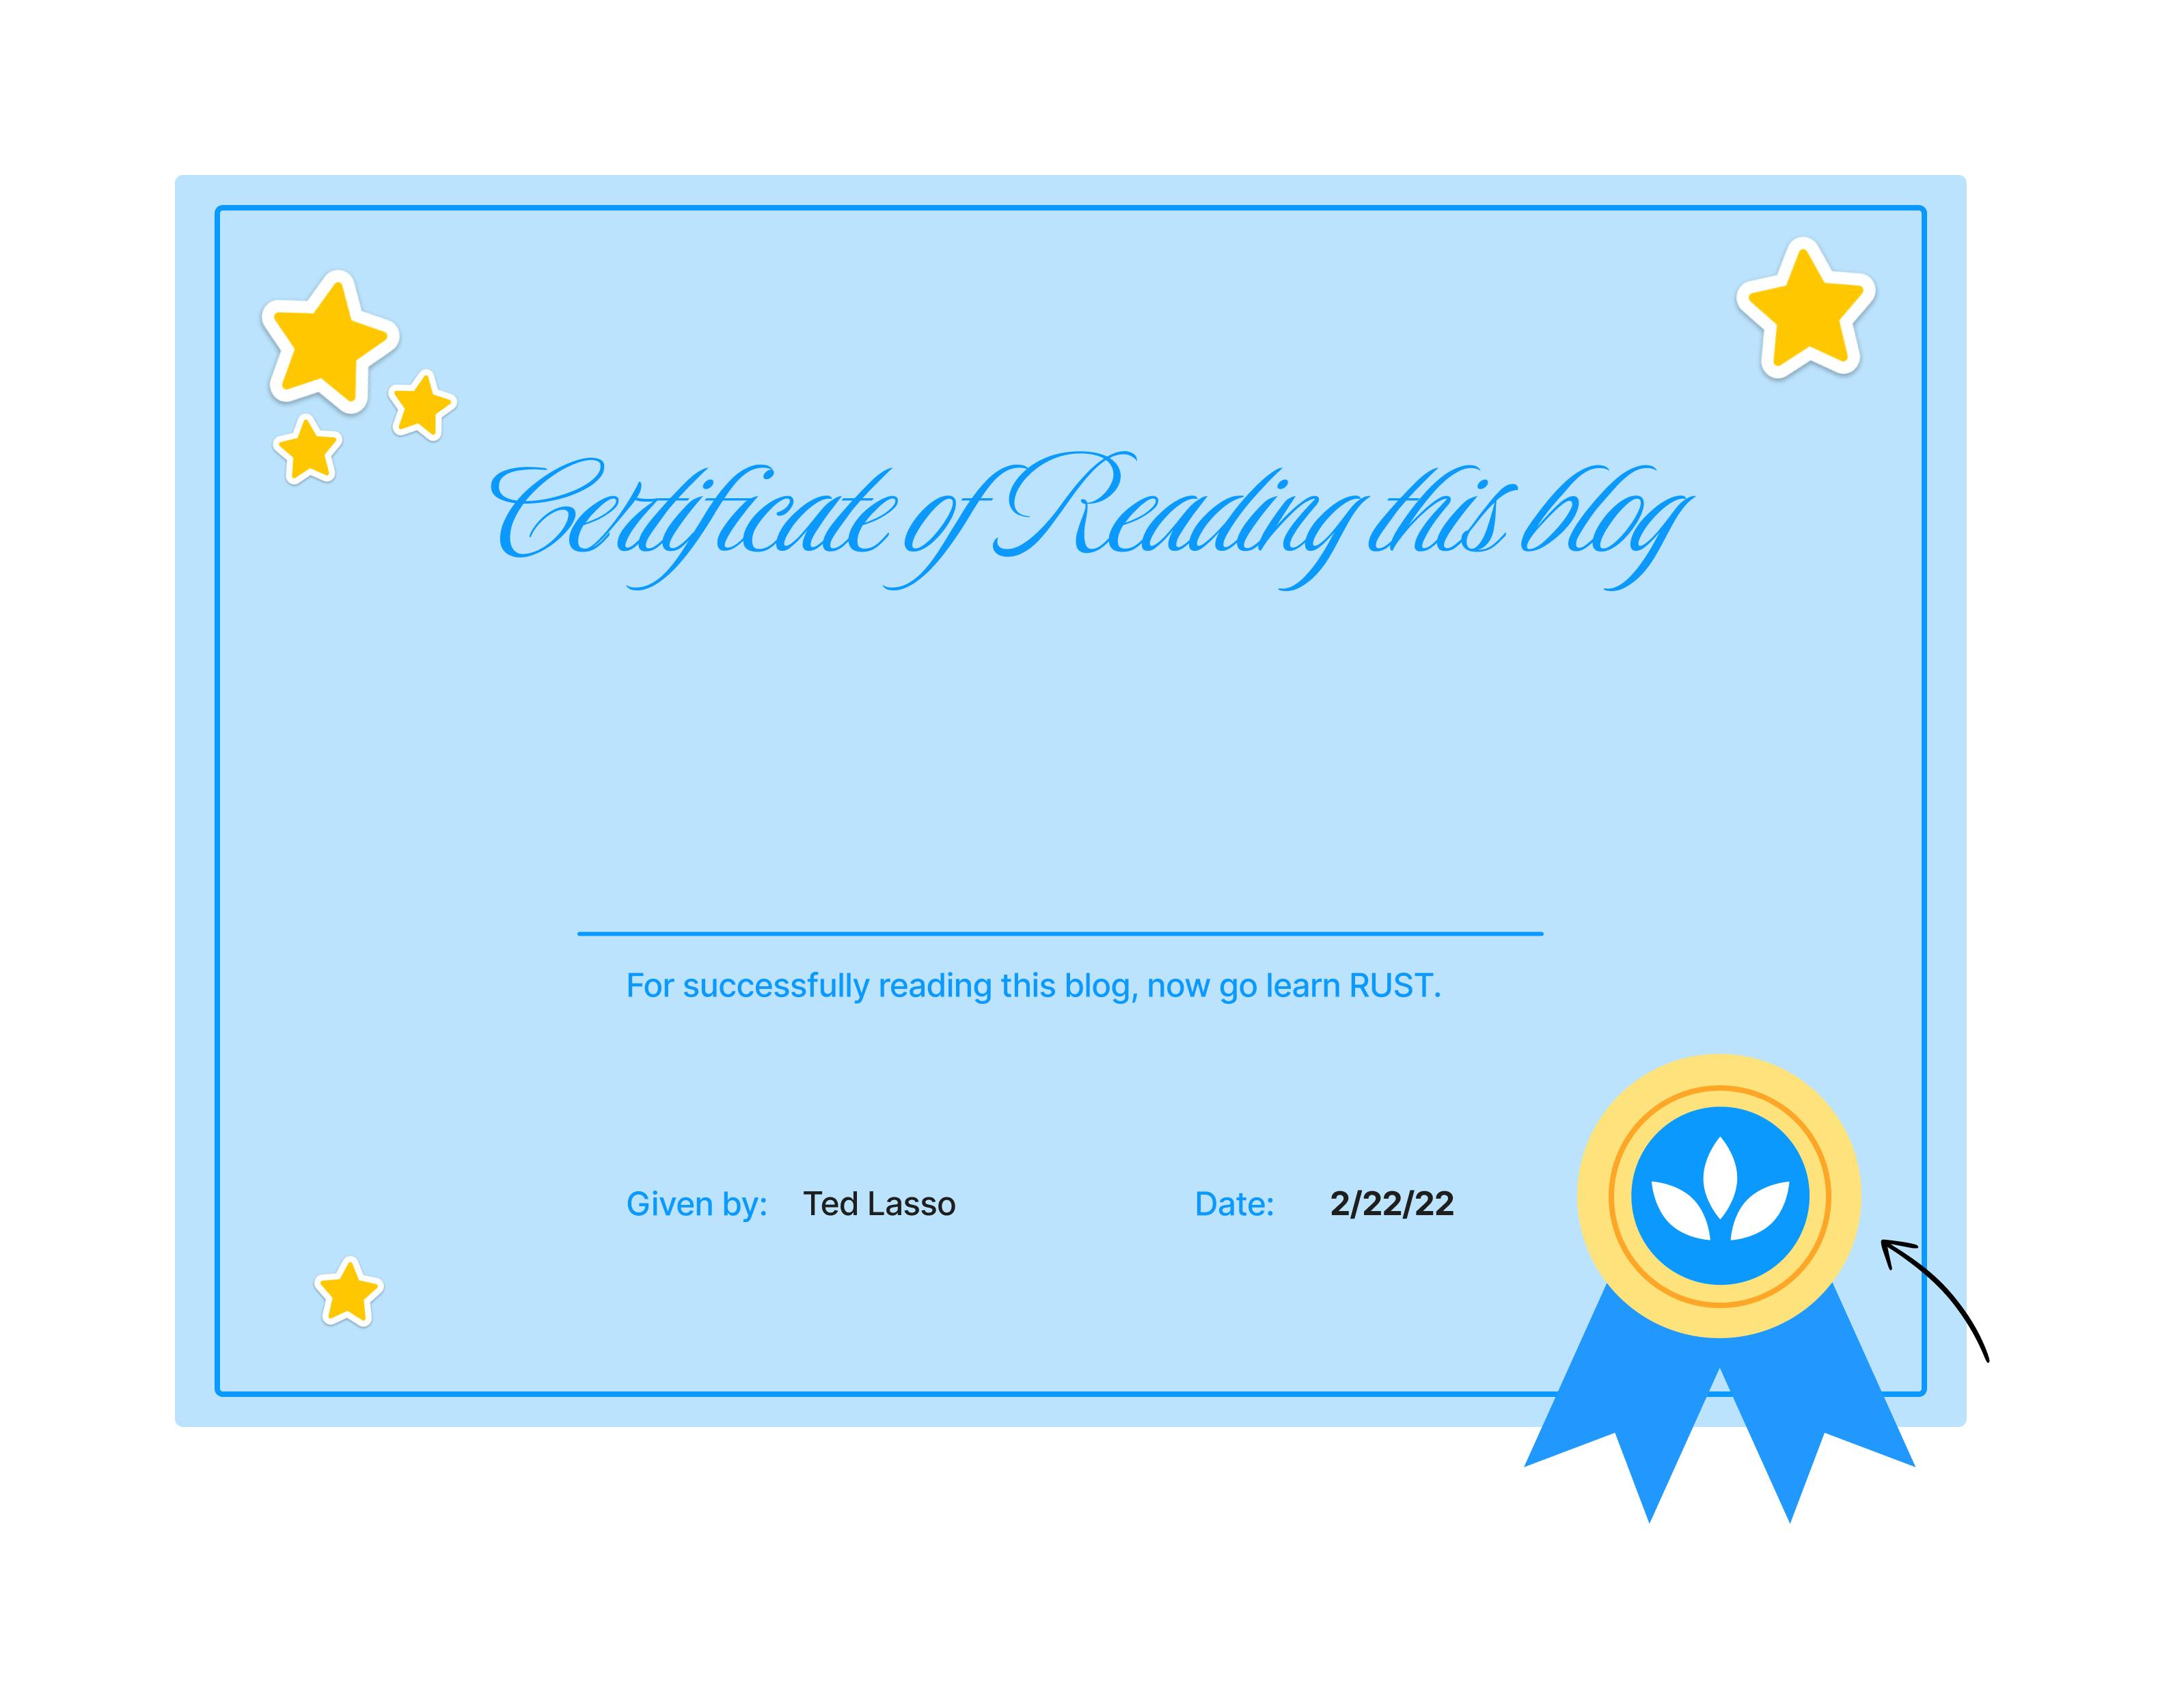 Sample certificate